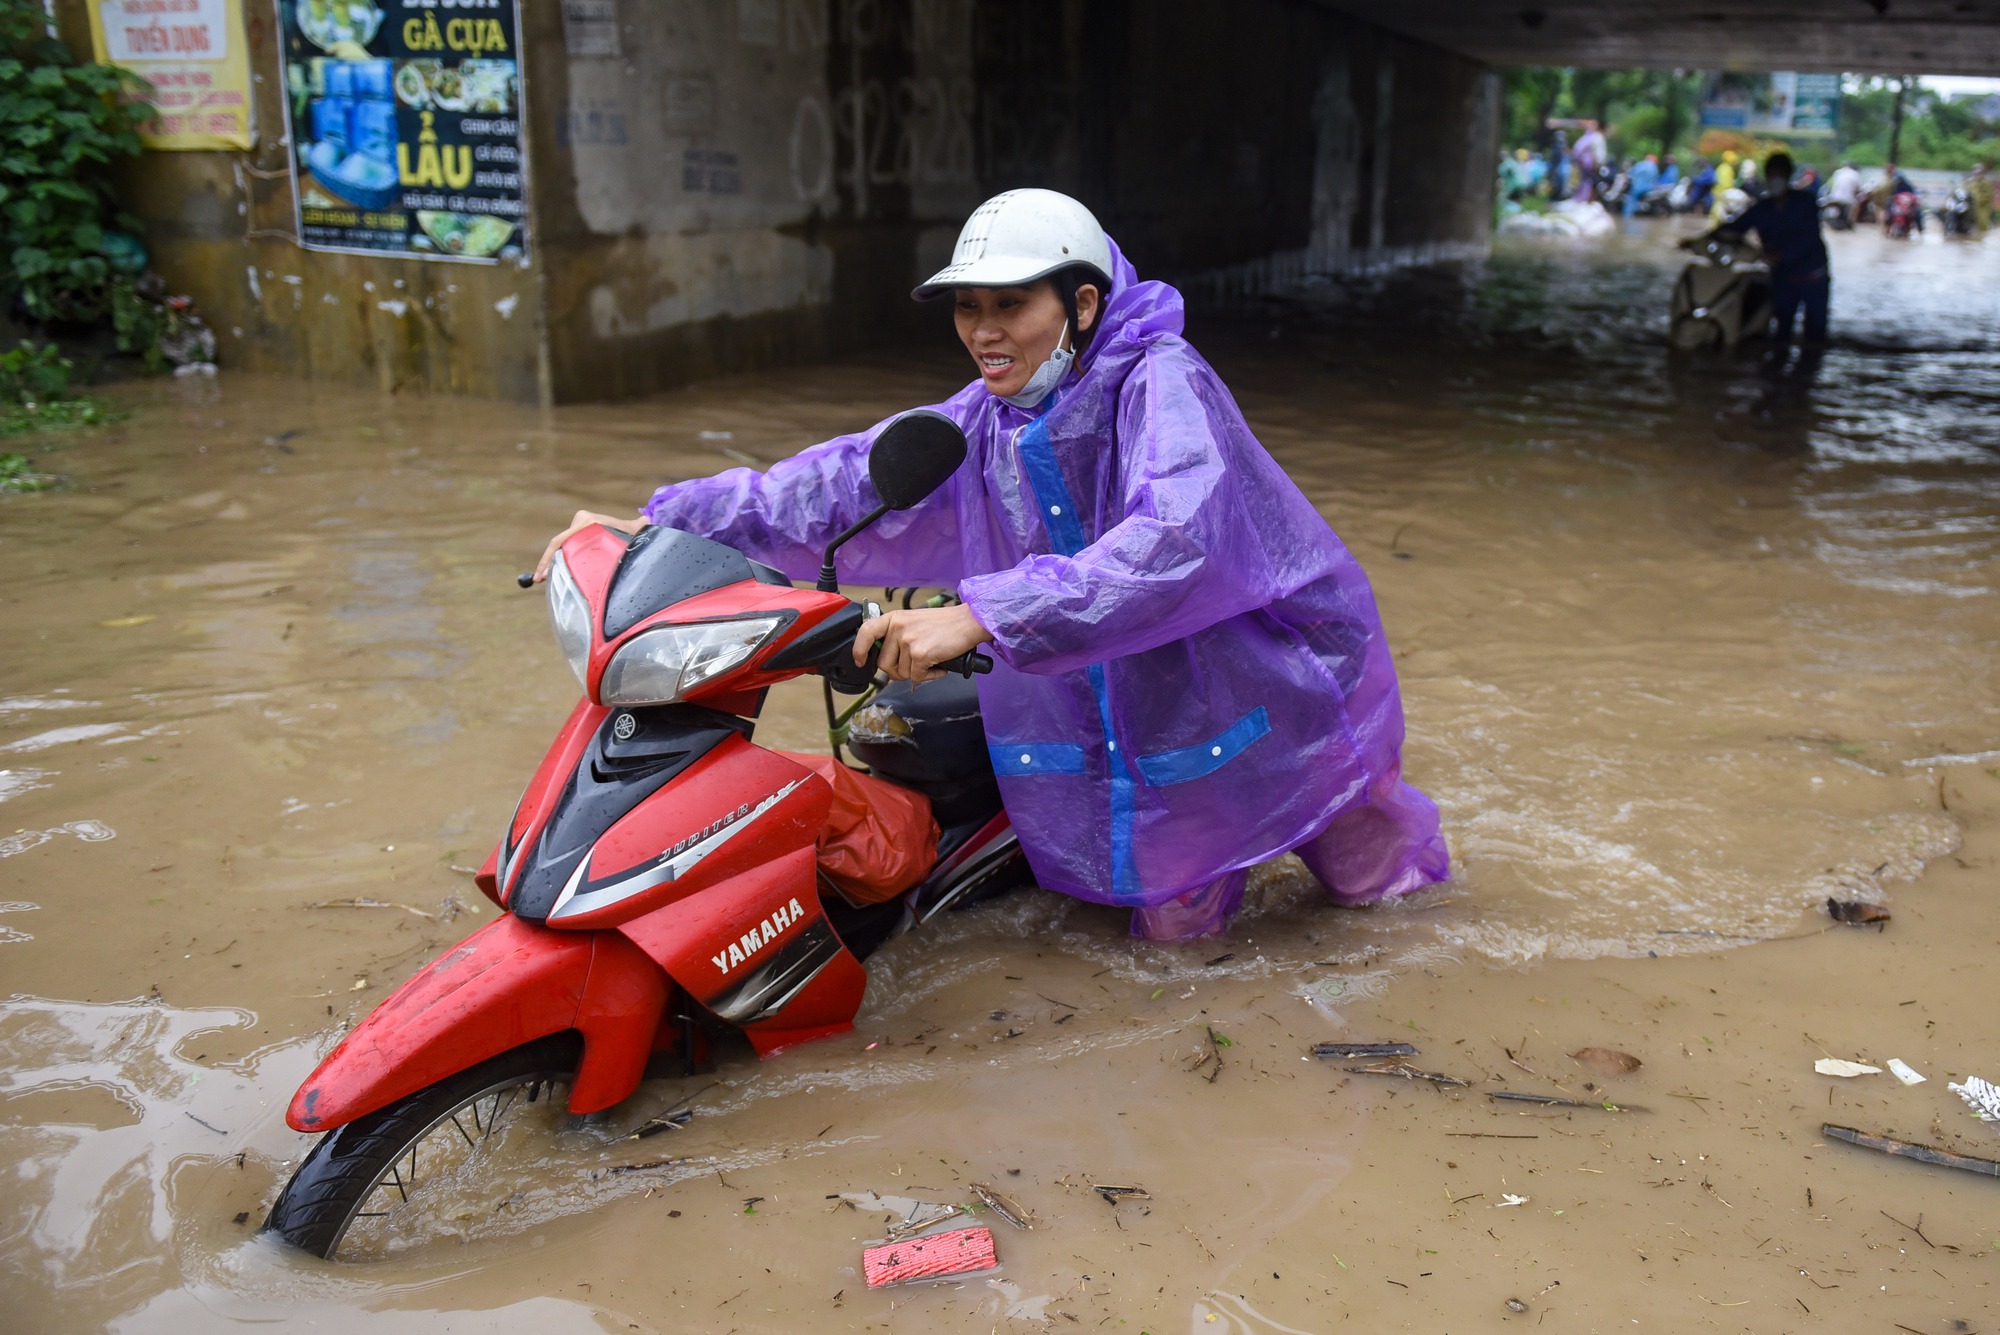 Đường gom đại lộ Thăng Long chìm trong biển nước sau trận mưa lớn - Ảnh 6.